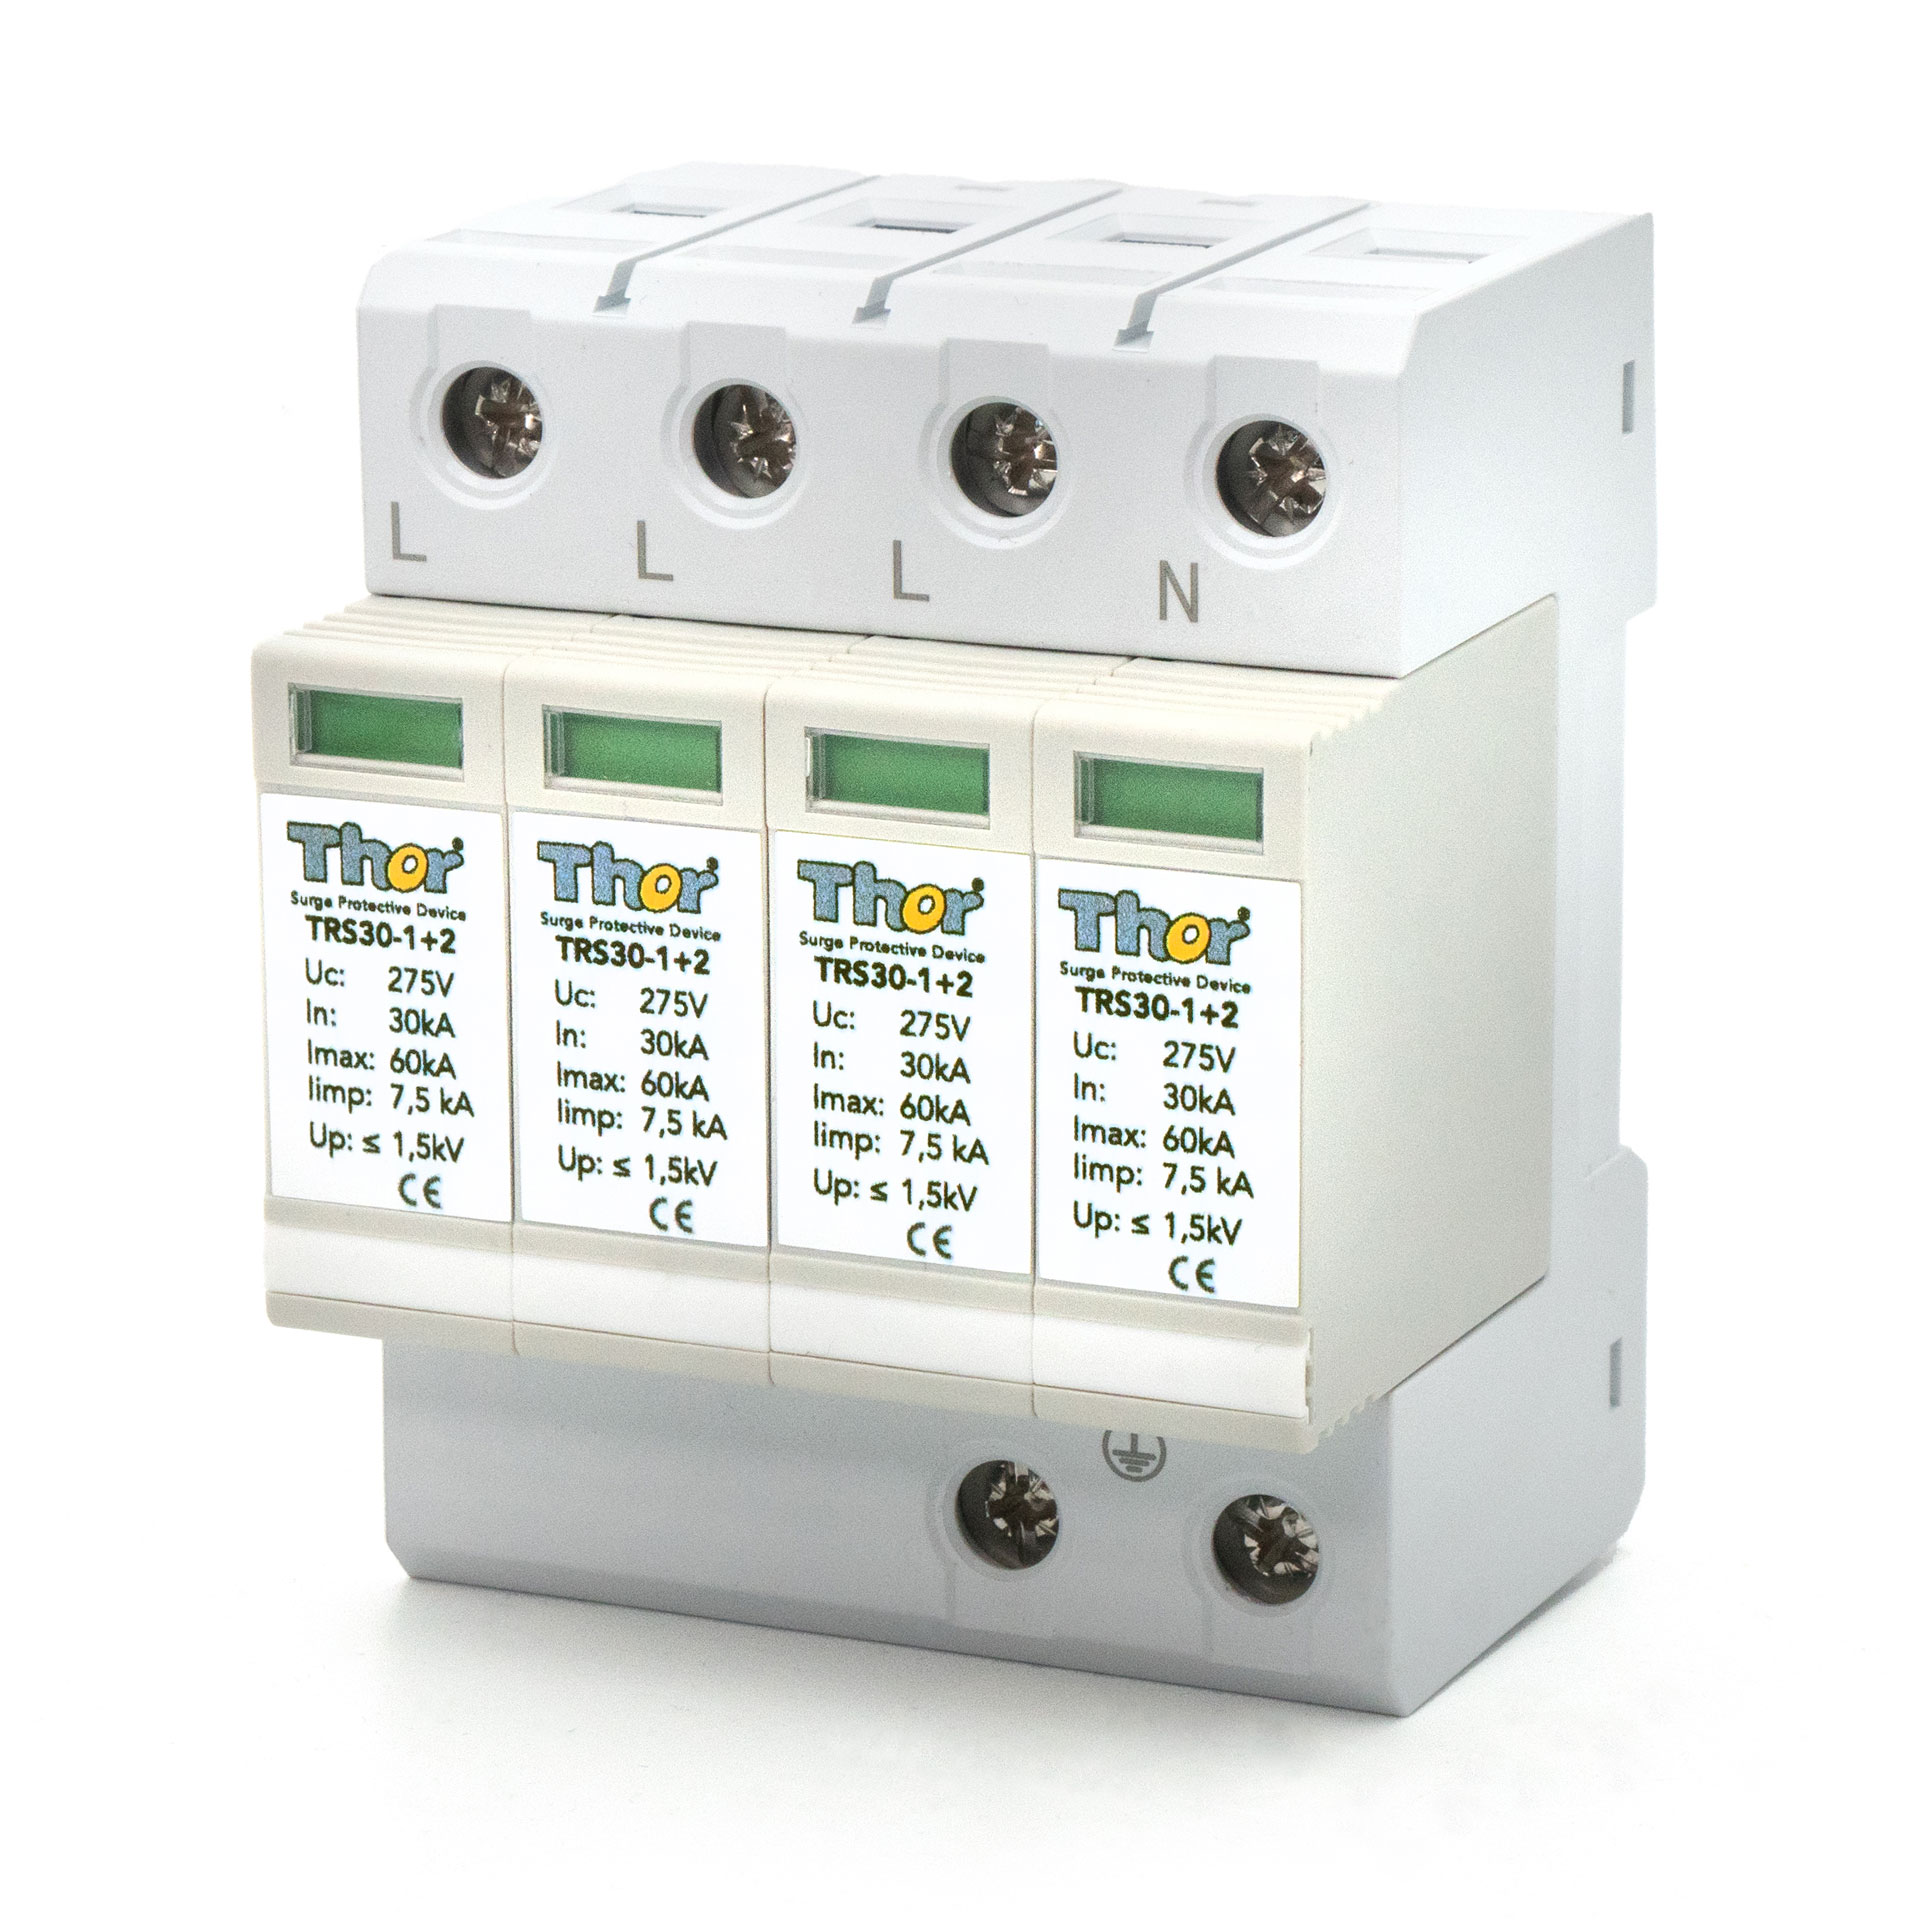 Teckey 30 Ampere RV-Überspannungsschutz,30-A-Überspannungsschutz - RV Power  Monitor Low-Bend-Schnittstelle, integrierter Polaritätstester zur  LED-Erkennung : : Elektronik & Foto